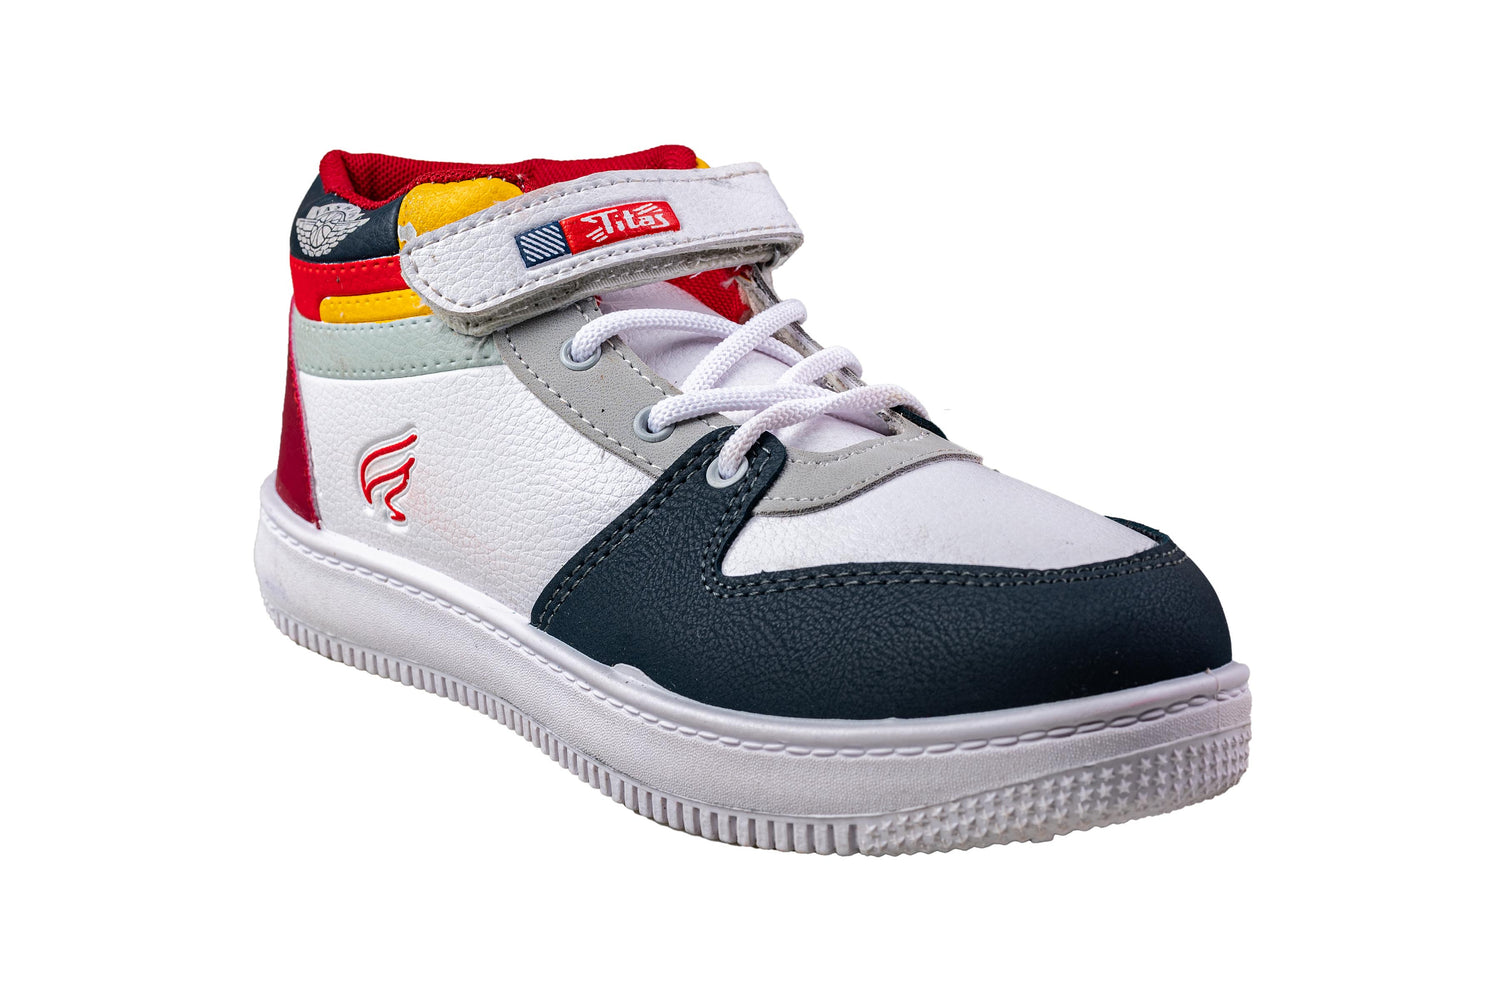 Titas Boys White / Red Sports Shoe